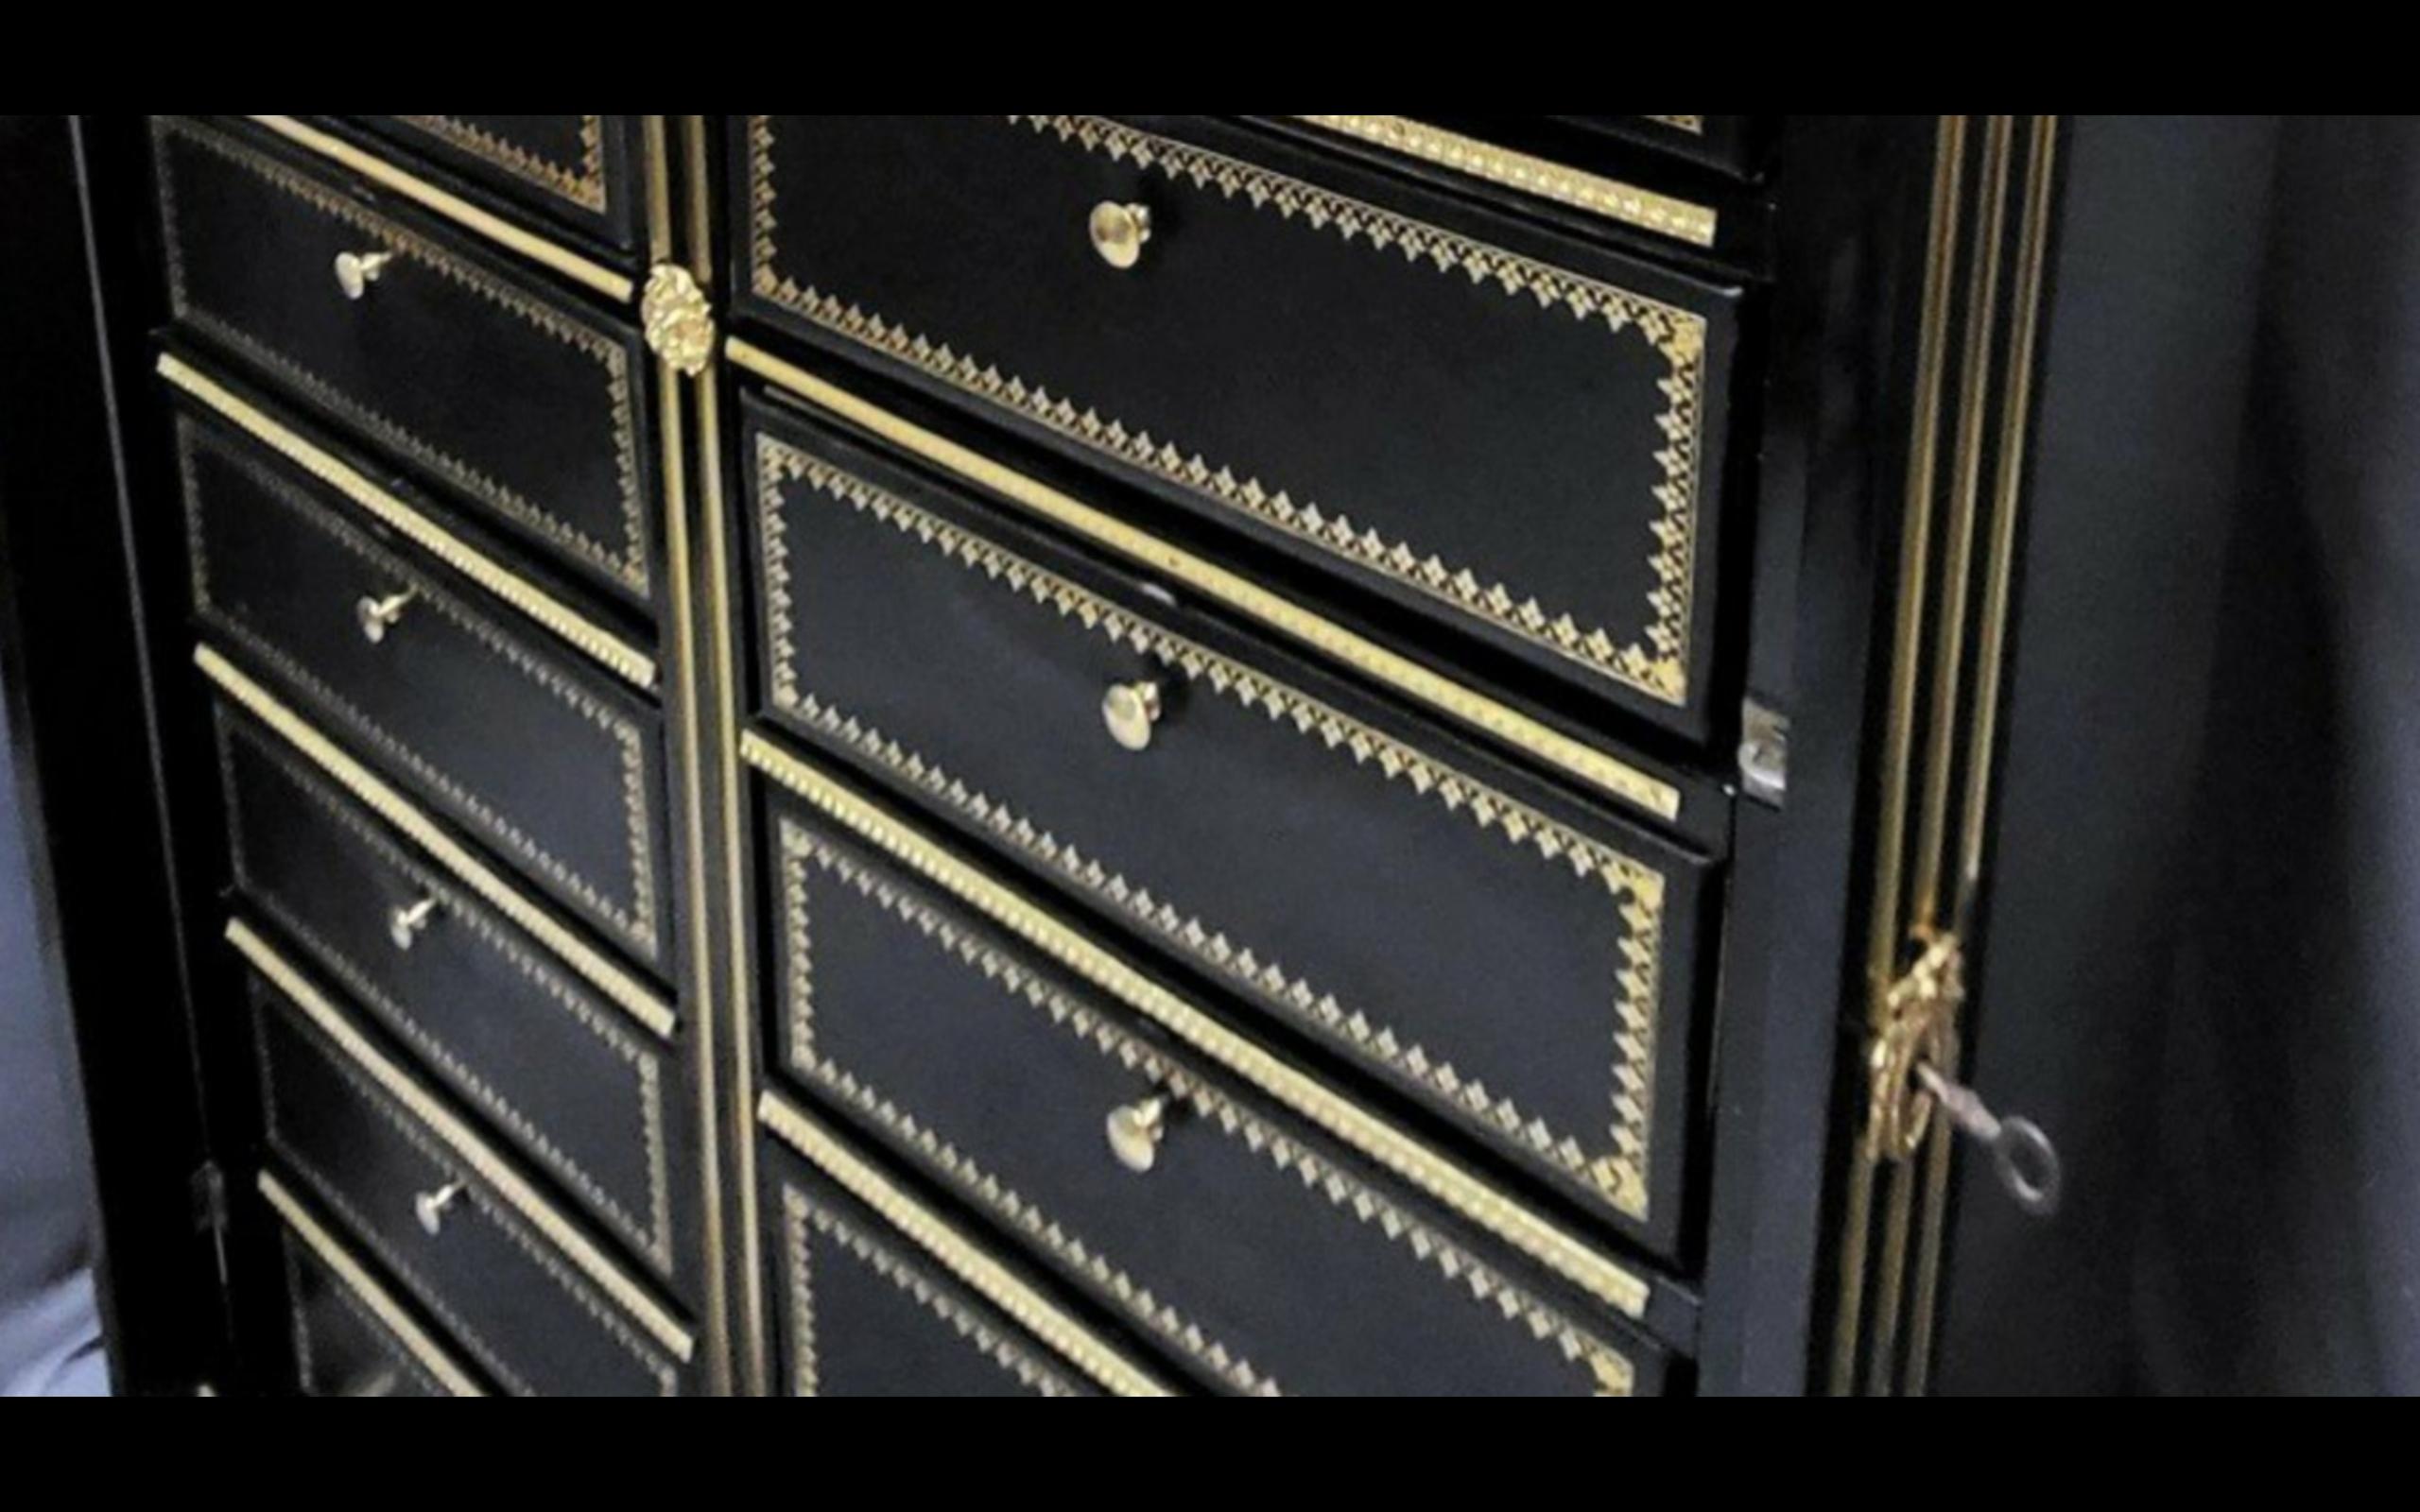 Rare, grand et haut cabinet de cartons de notaire, époque Napoléon III vers 1870, avec une riche ornementation de bronzes dorés tels que chutes hautes et basses, lingotières, rosaces, trous de serrure. Modèle étonnant avec 20 boîtes en carton épais